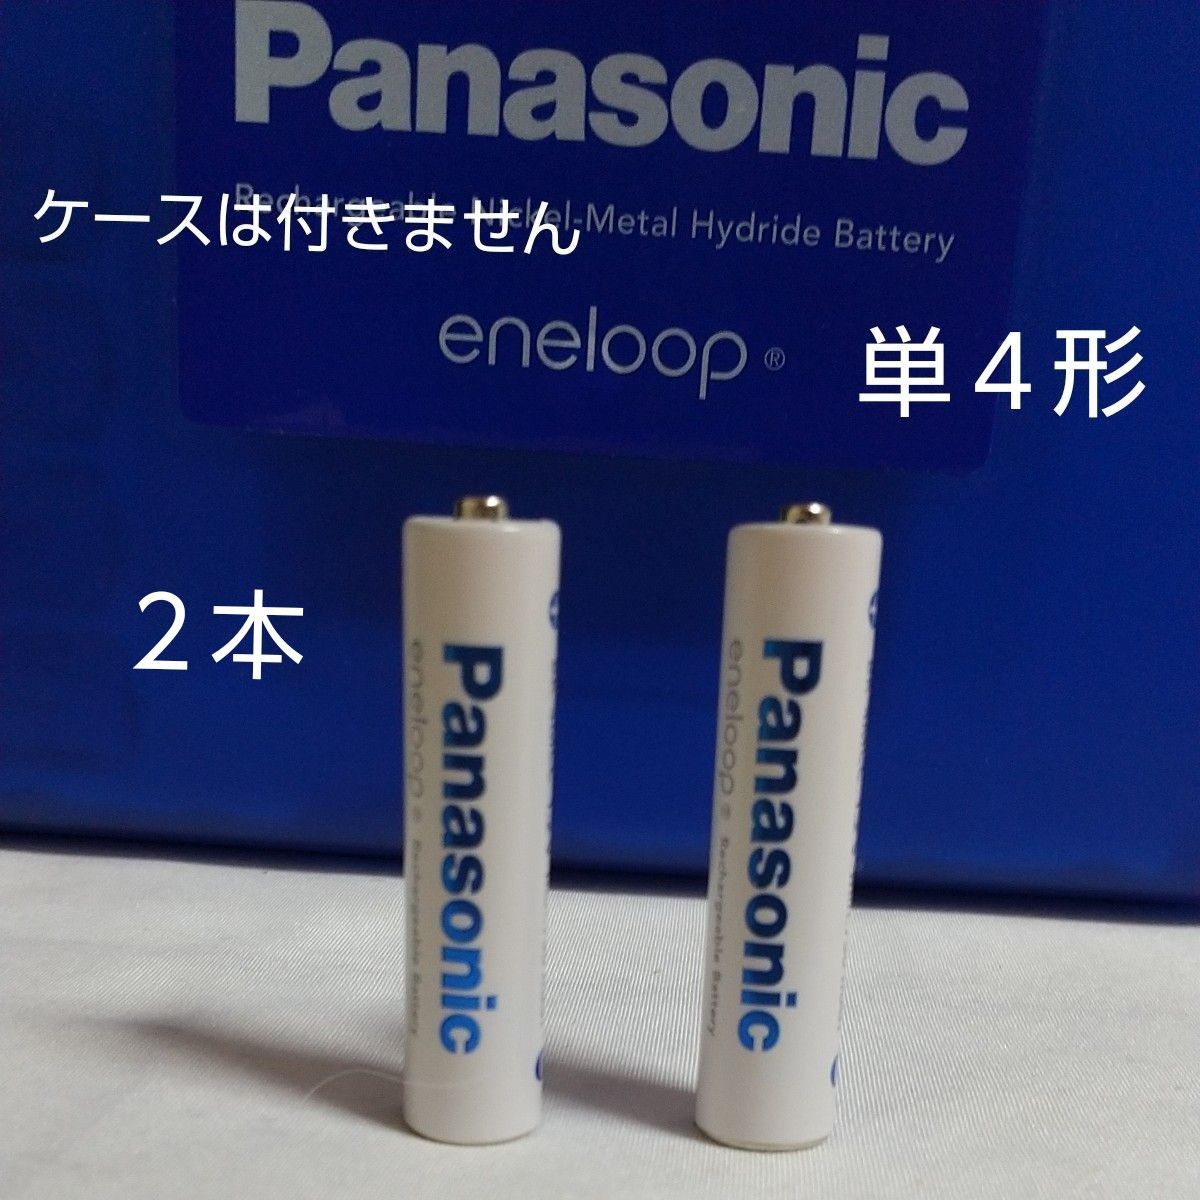 Panasonic eneloopエネループ ニッケル単４形充電池2本　※お写真の青いケースは付きません。